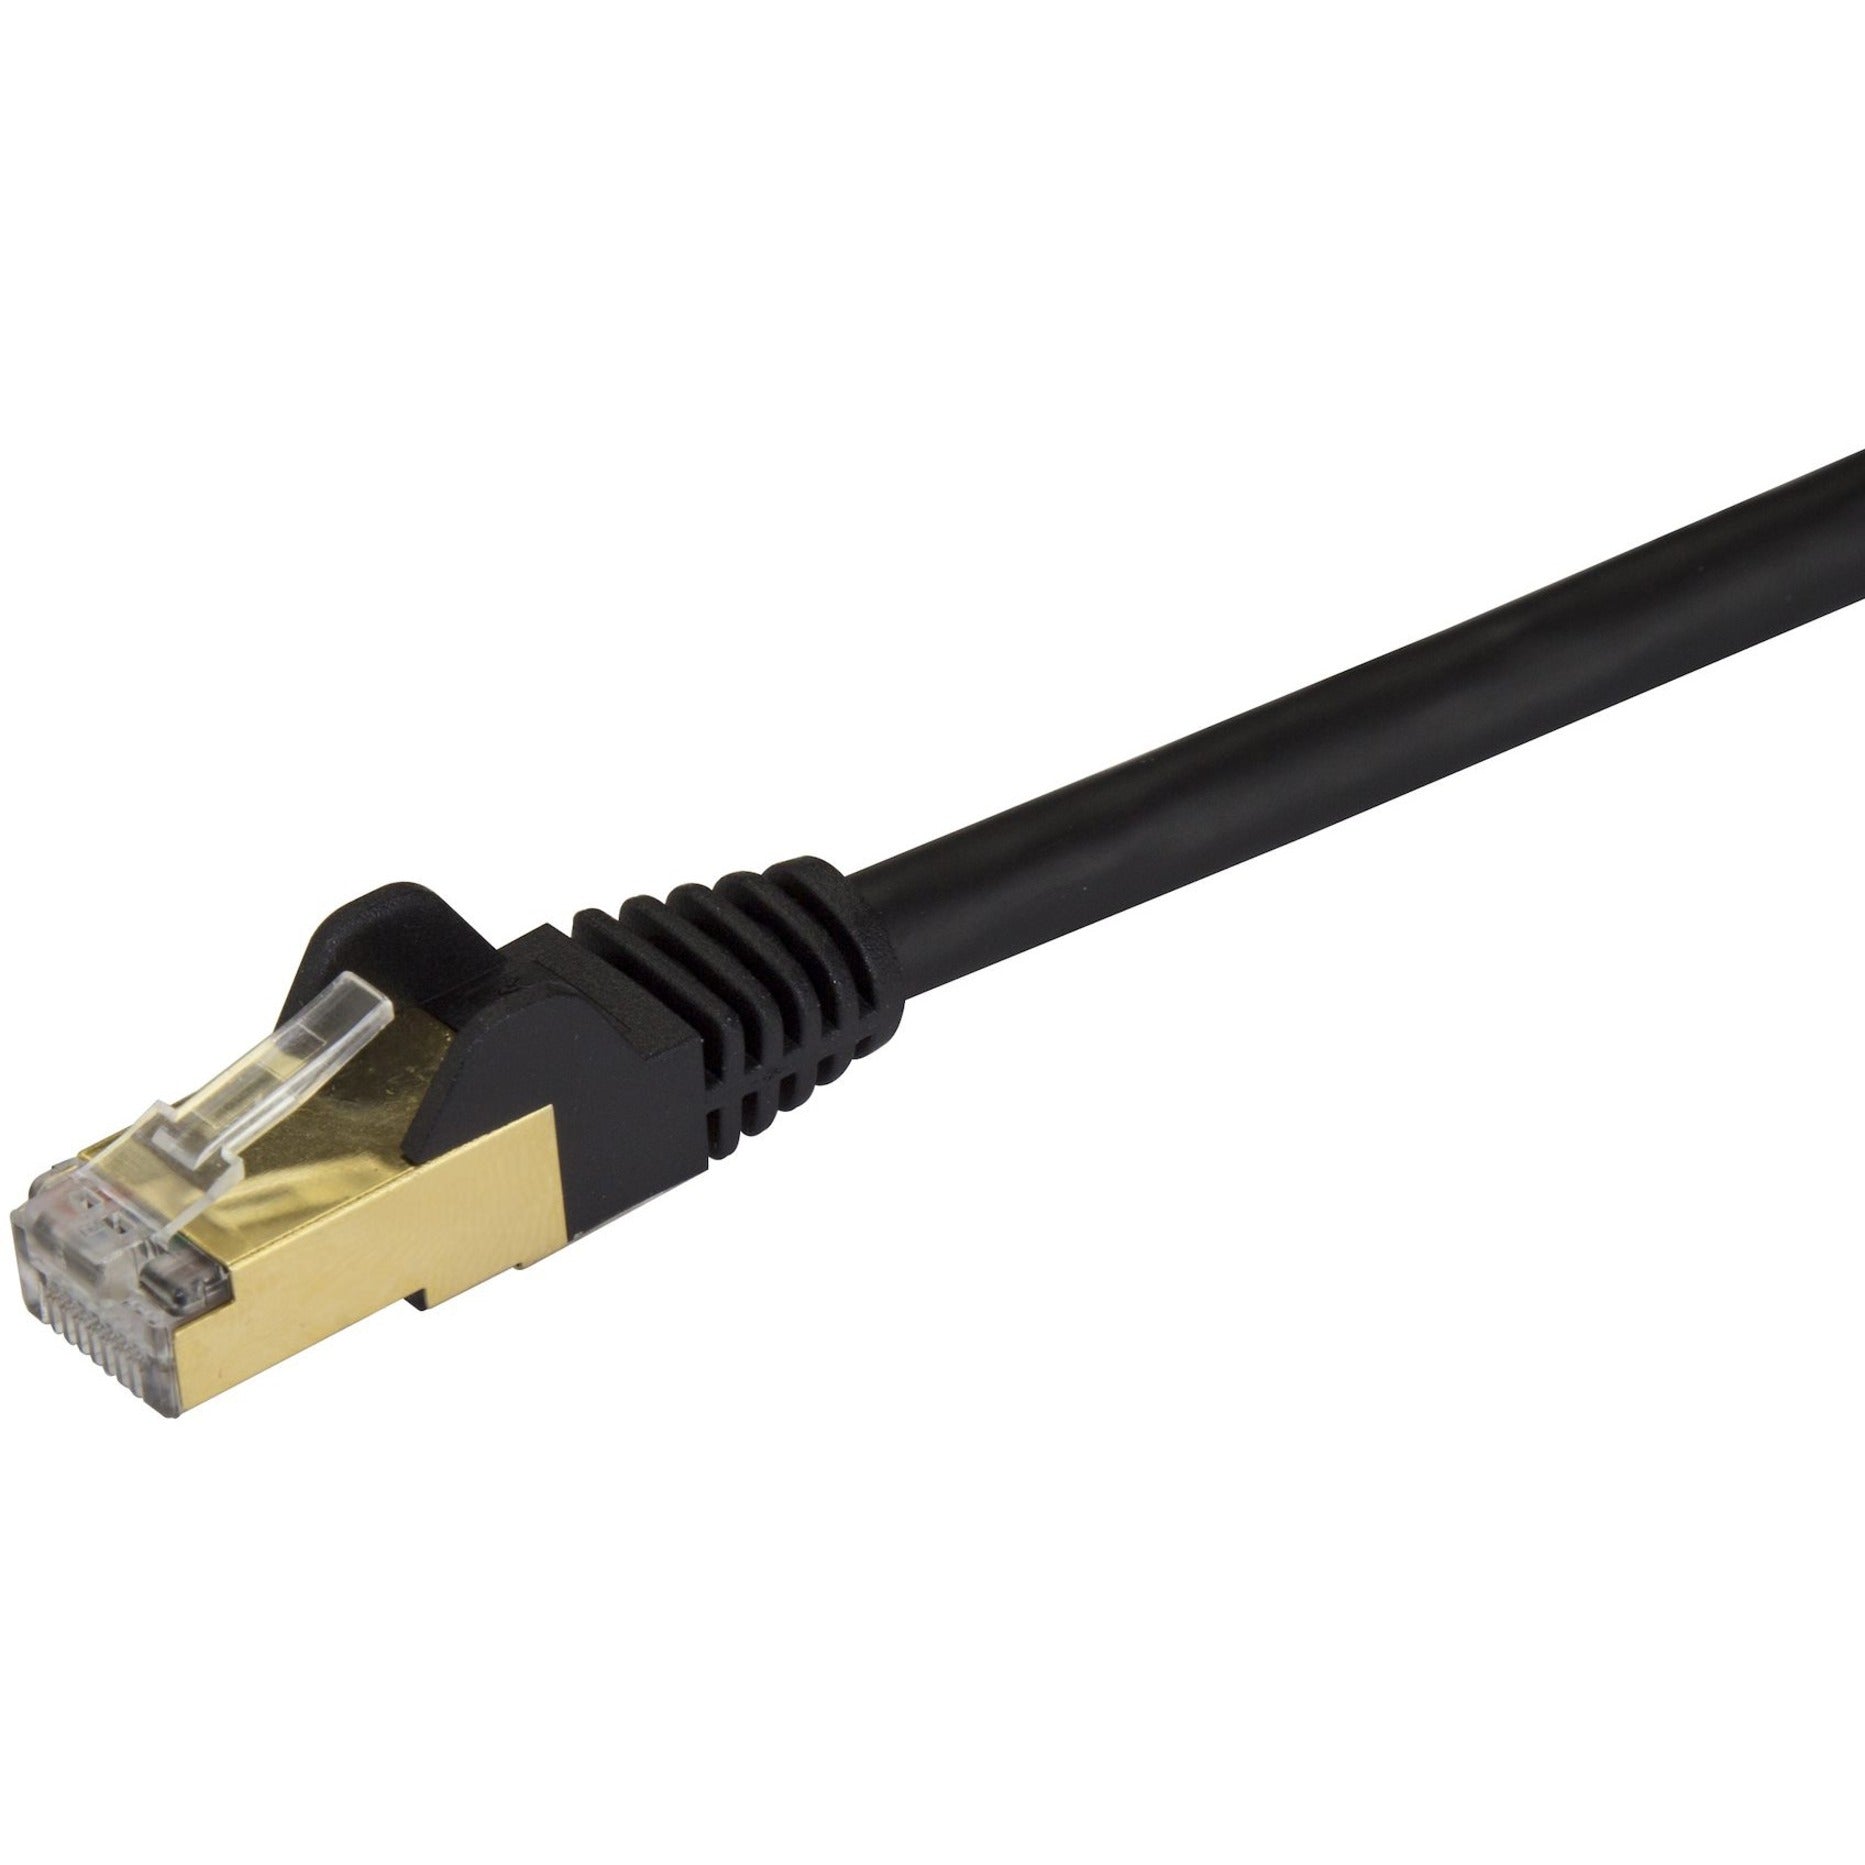 StarTech.com C6ASPAT5BK Cable de conexión Ethernet Cat6a - Blindado (STP) - 152 m Negro Cable Ethernet RJ45 sin enganches